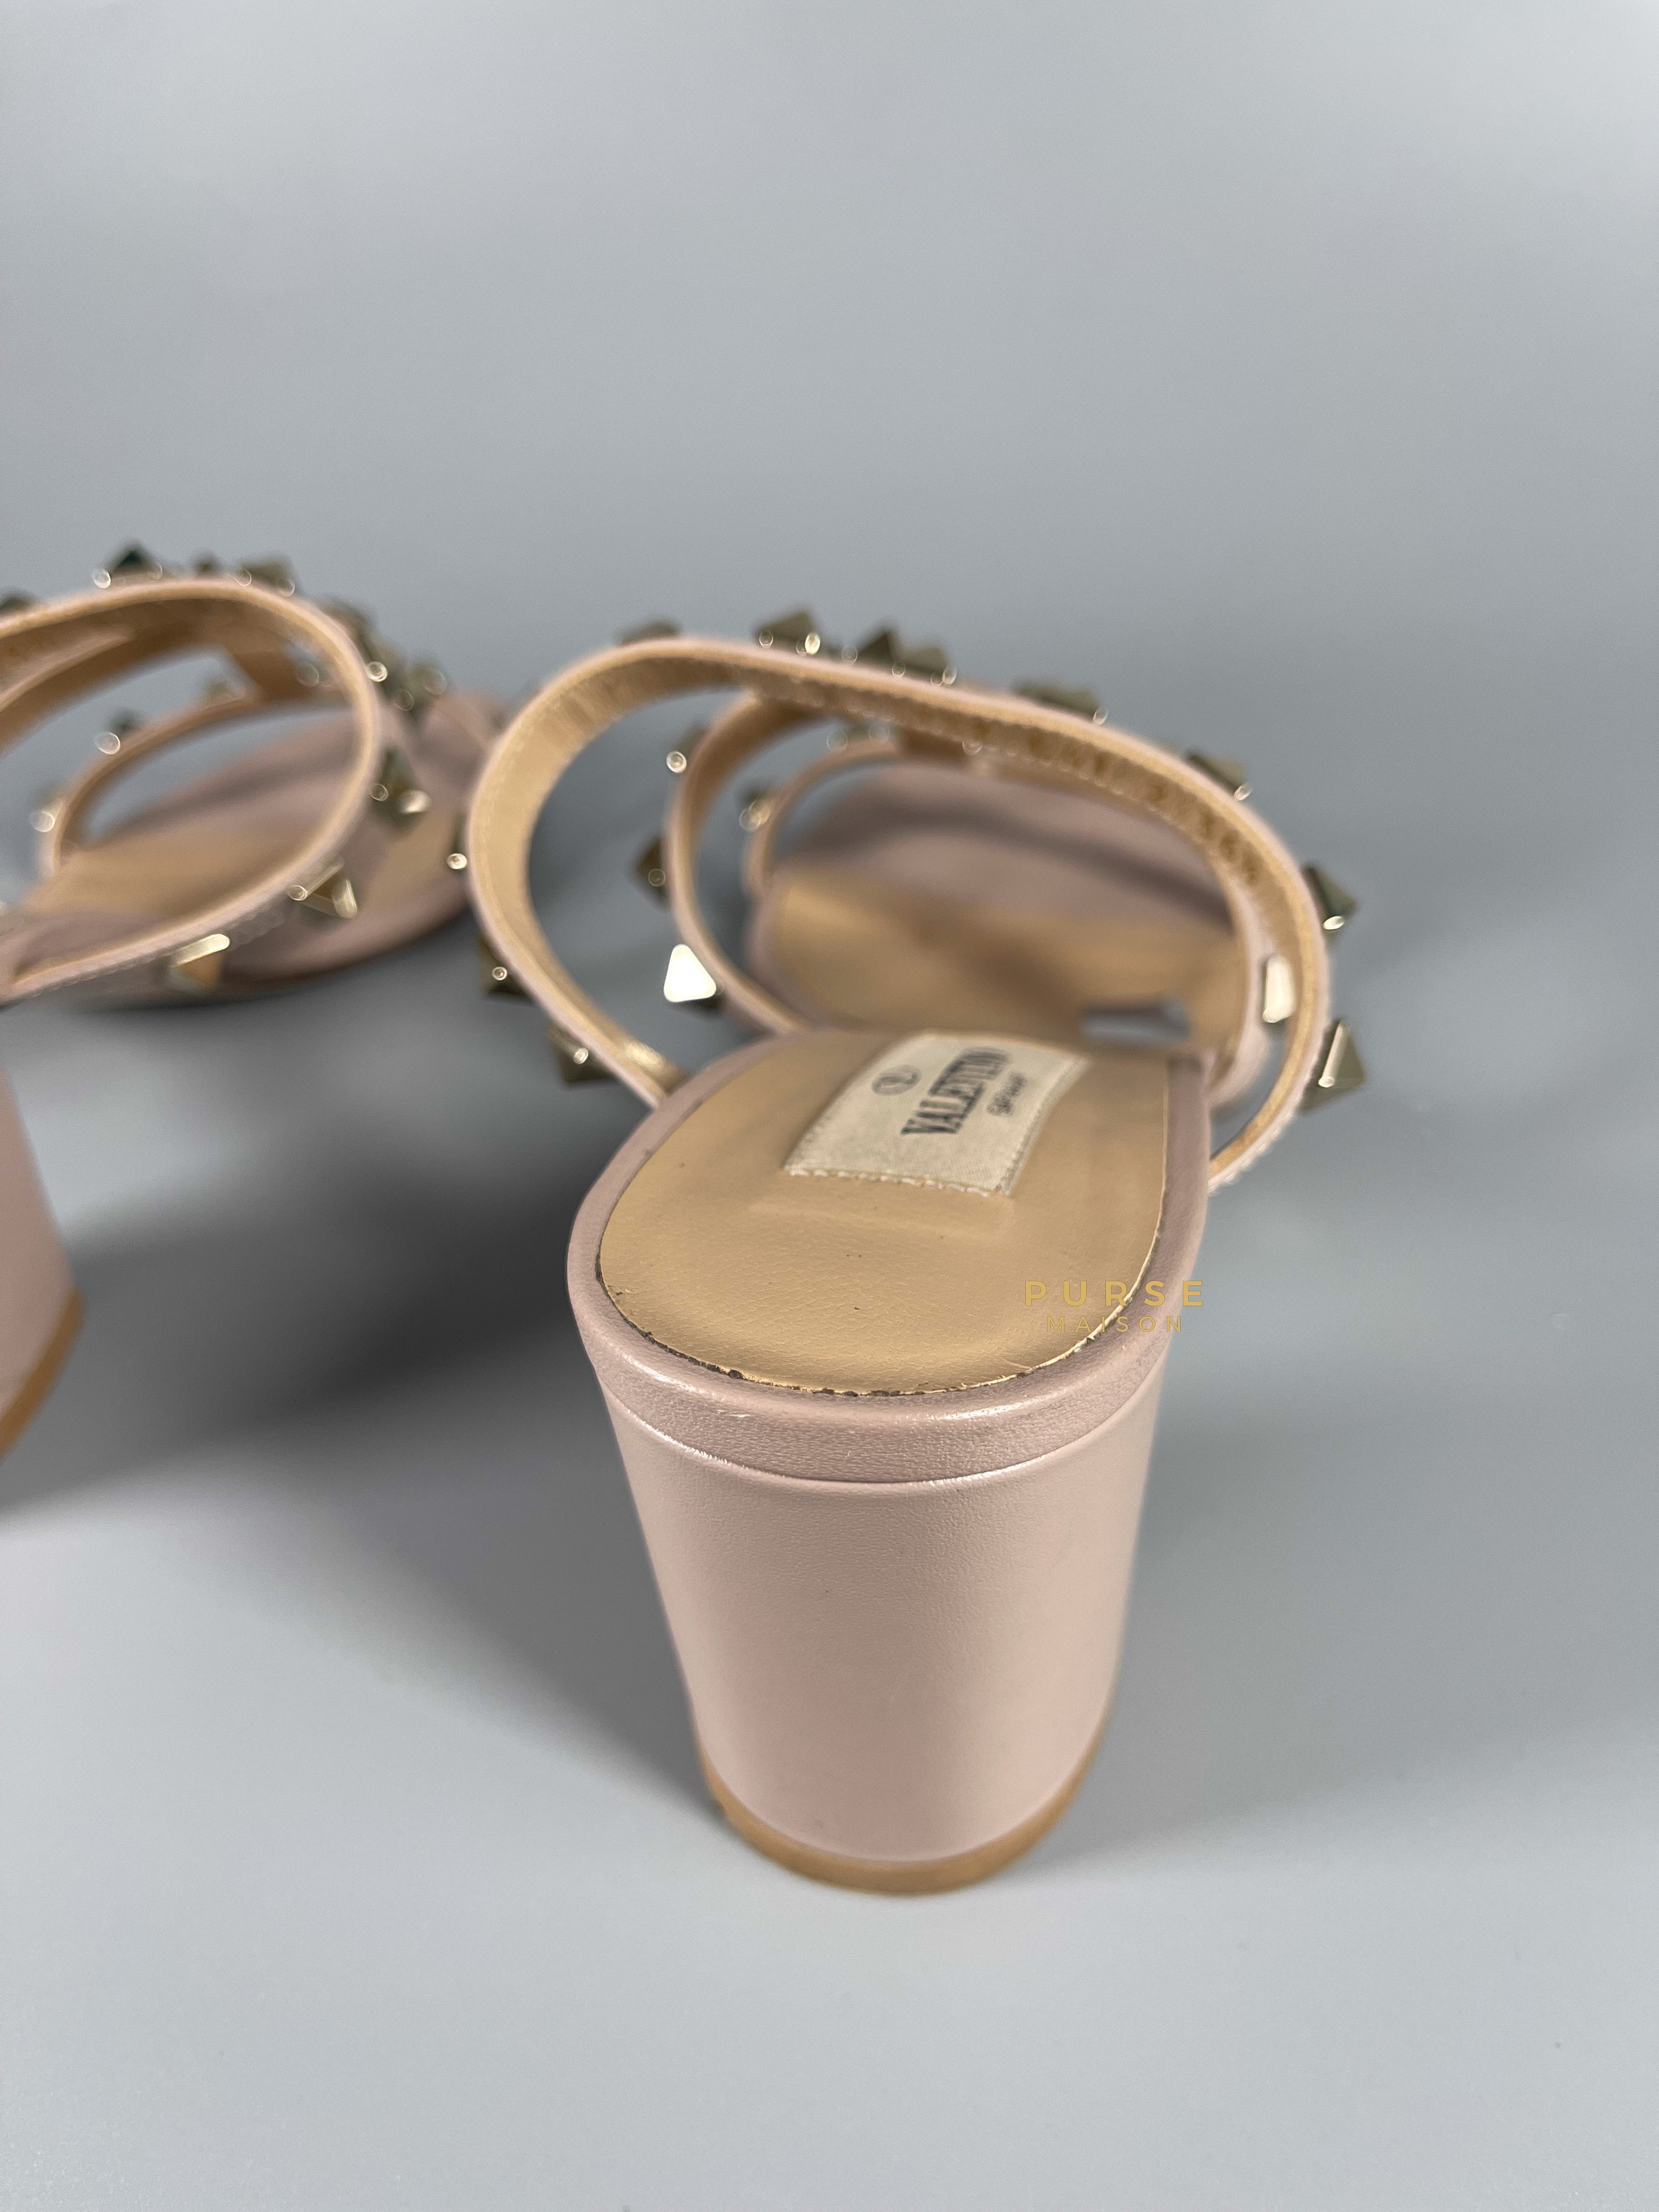 Valentino Garavani Rockstud Poudre Sandals with Heels Size 36.5 EU (23.5 cm) | Purse Maison Luxury Bags Shop